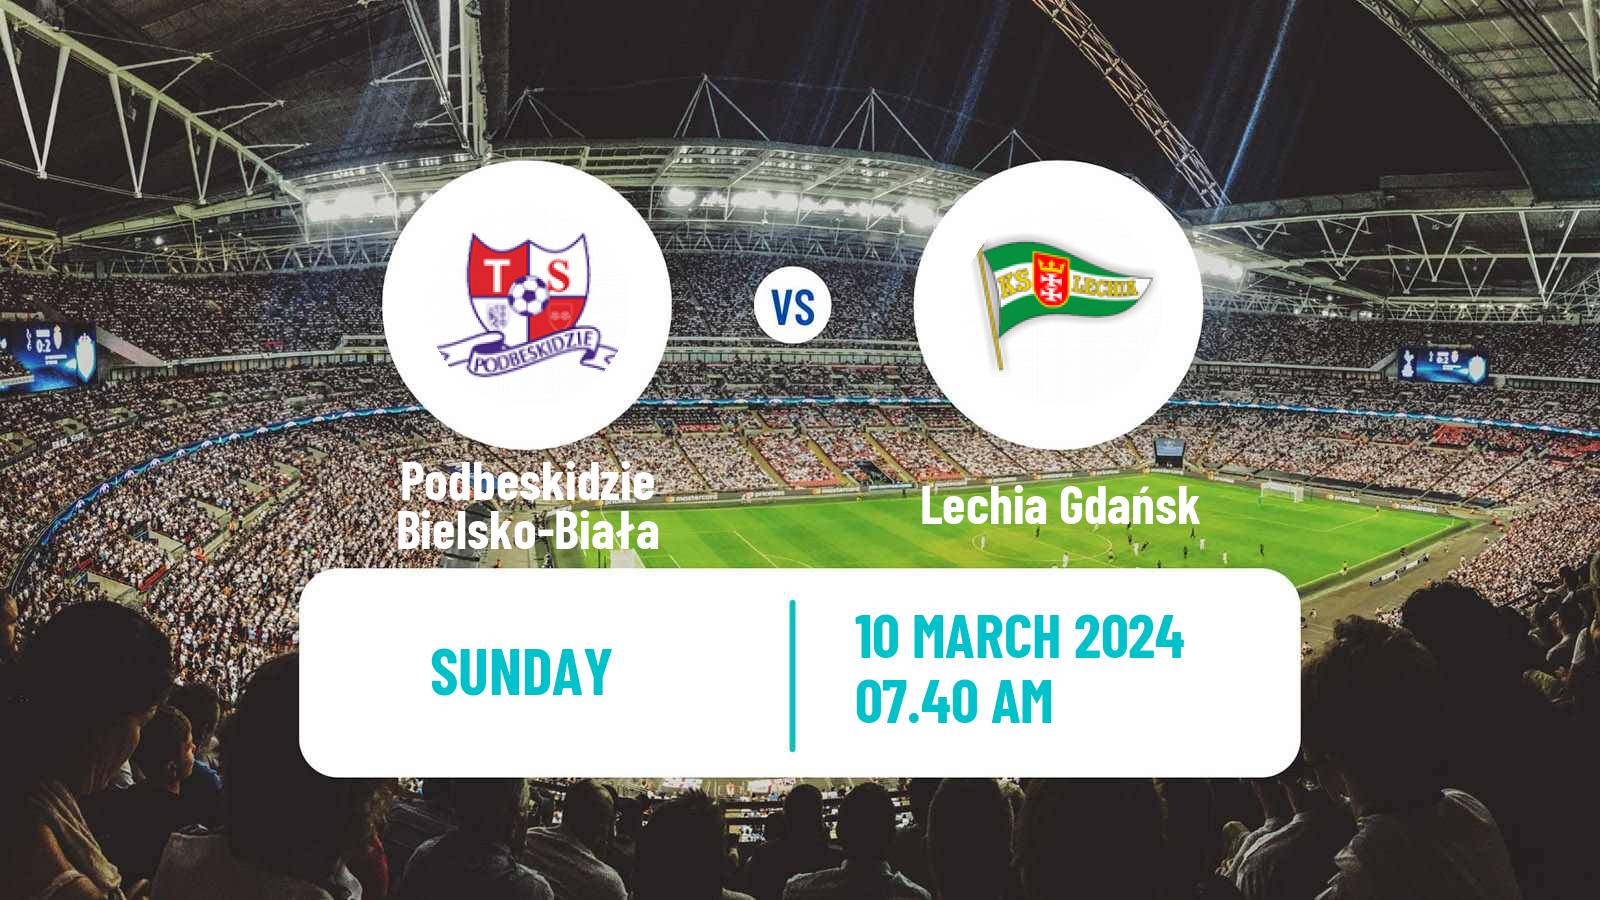 Soccer Polish Division 1 Podbeskidzie Bielsko-Biała - Lechia Gdańsk